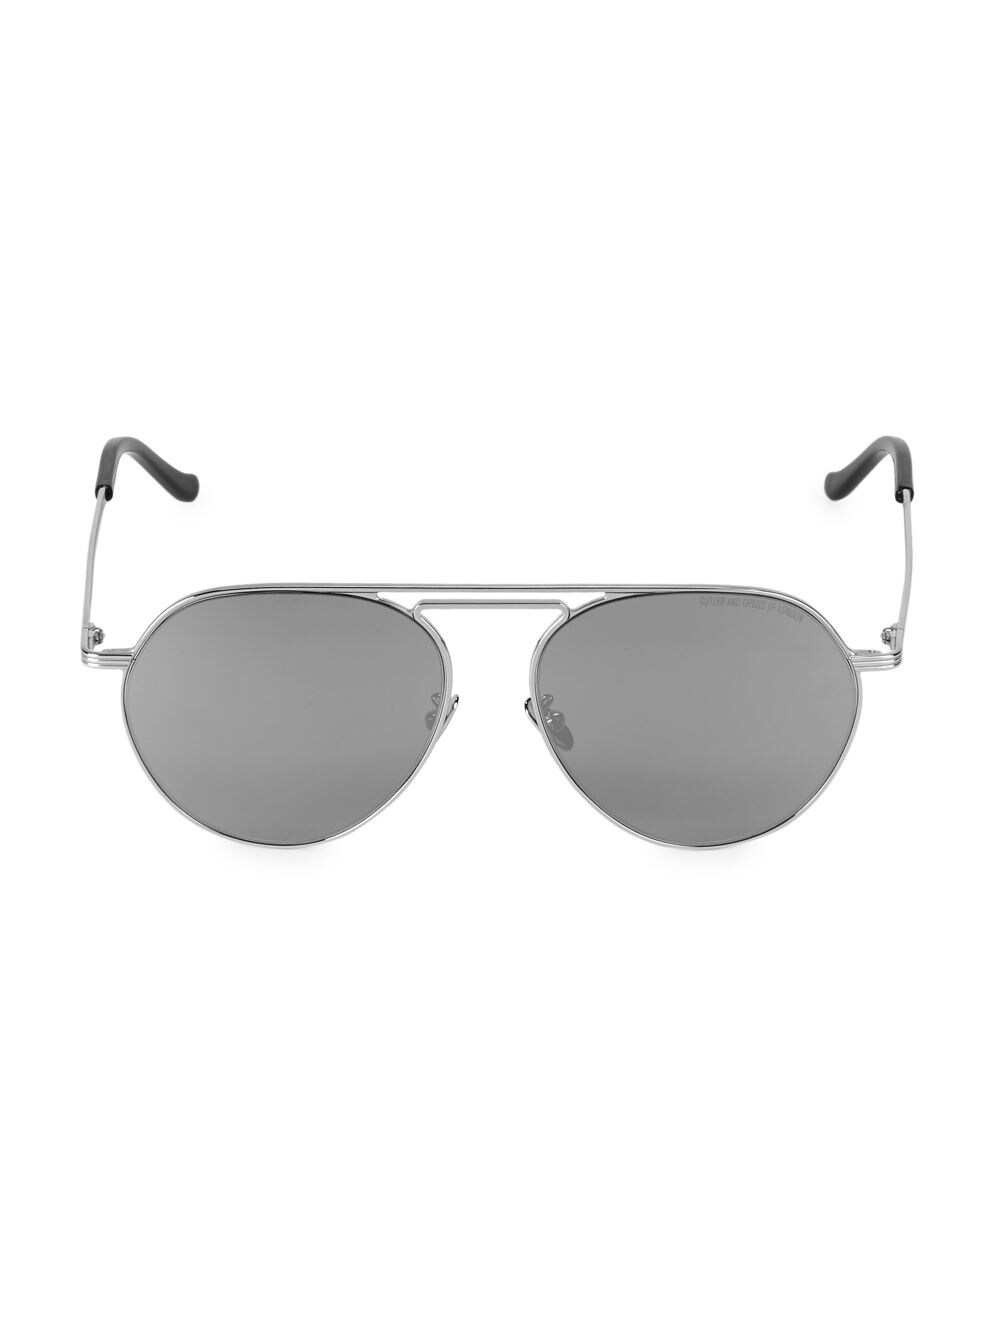 цена Металлические солнцезащитные очки-авиаторы 58 мм Cutler and Gross, серебряный